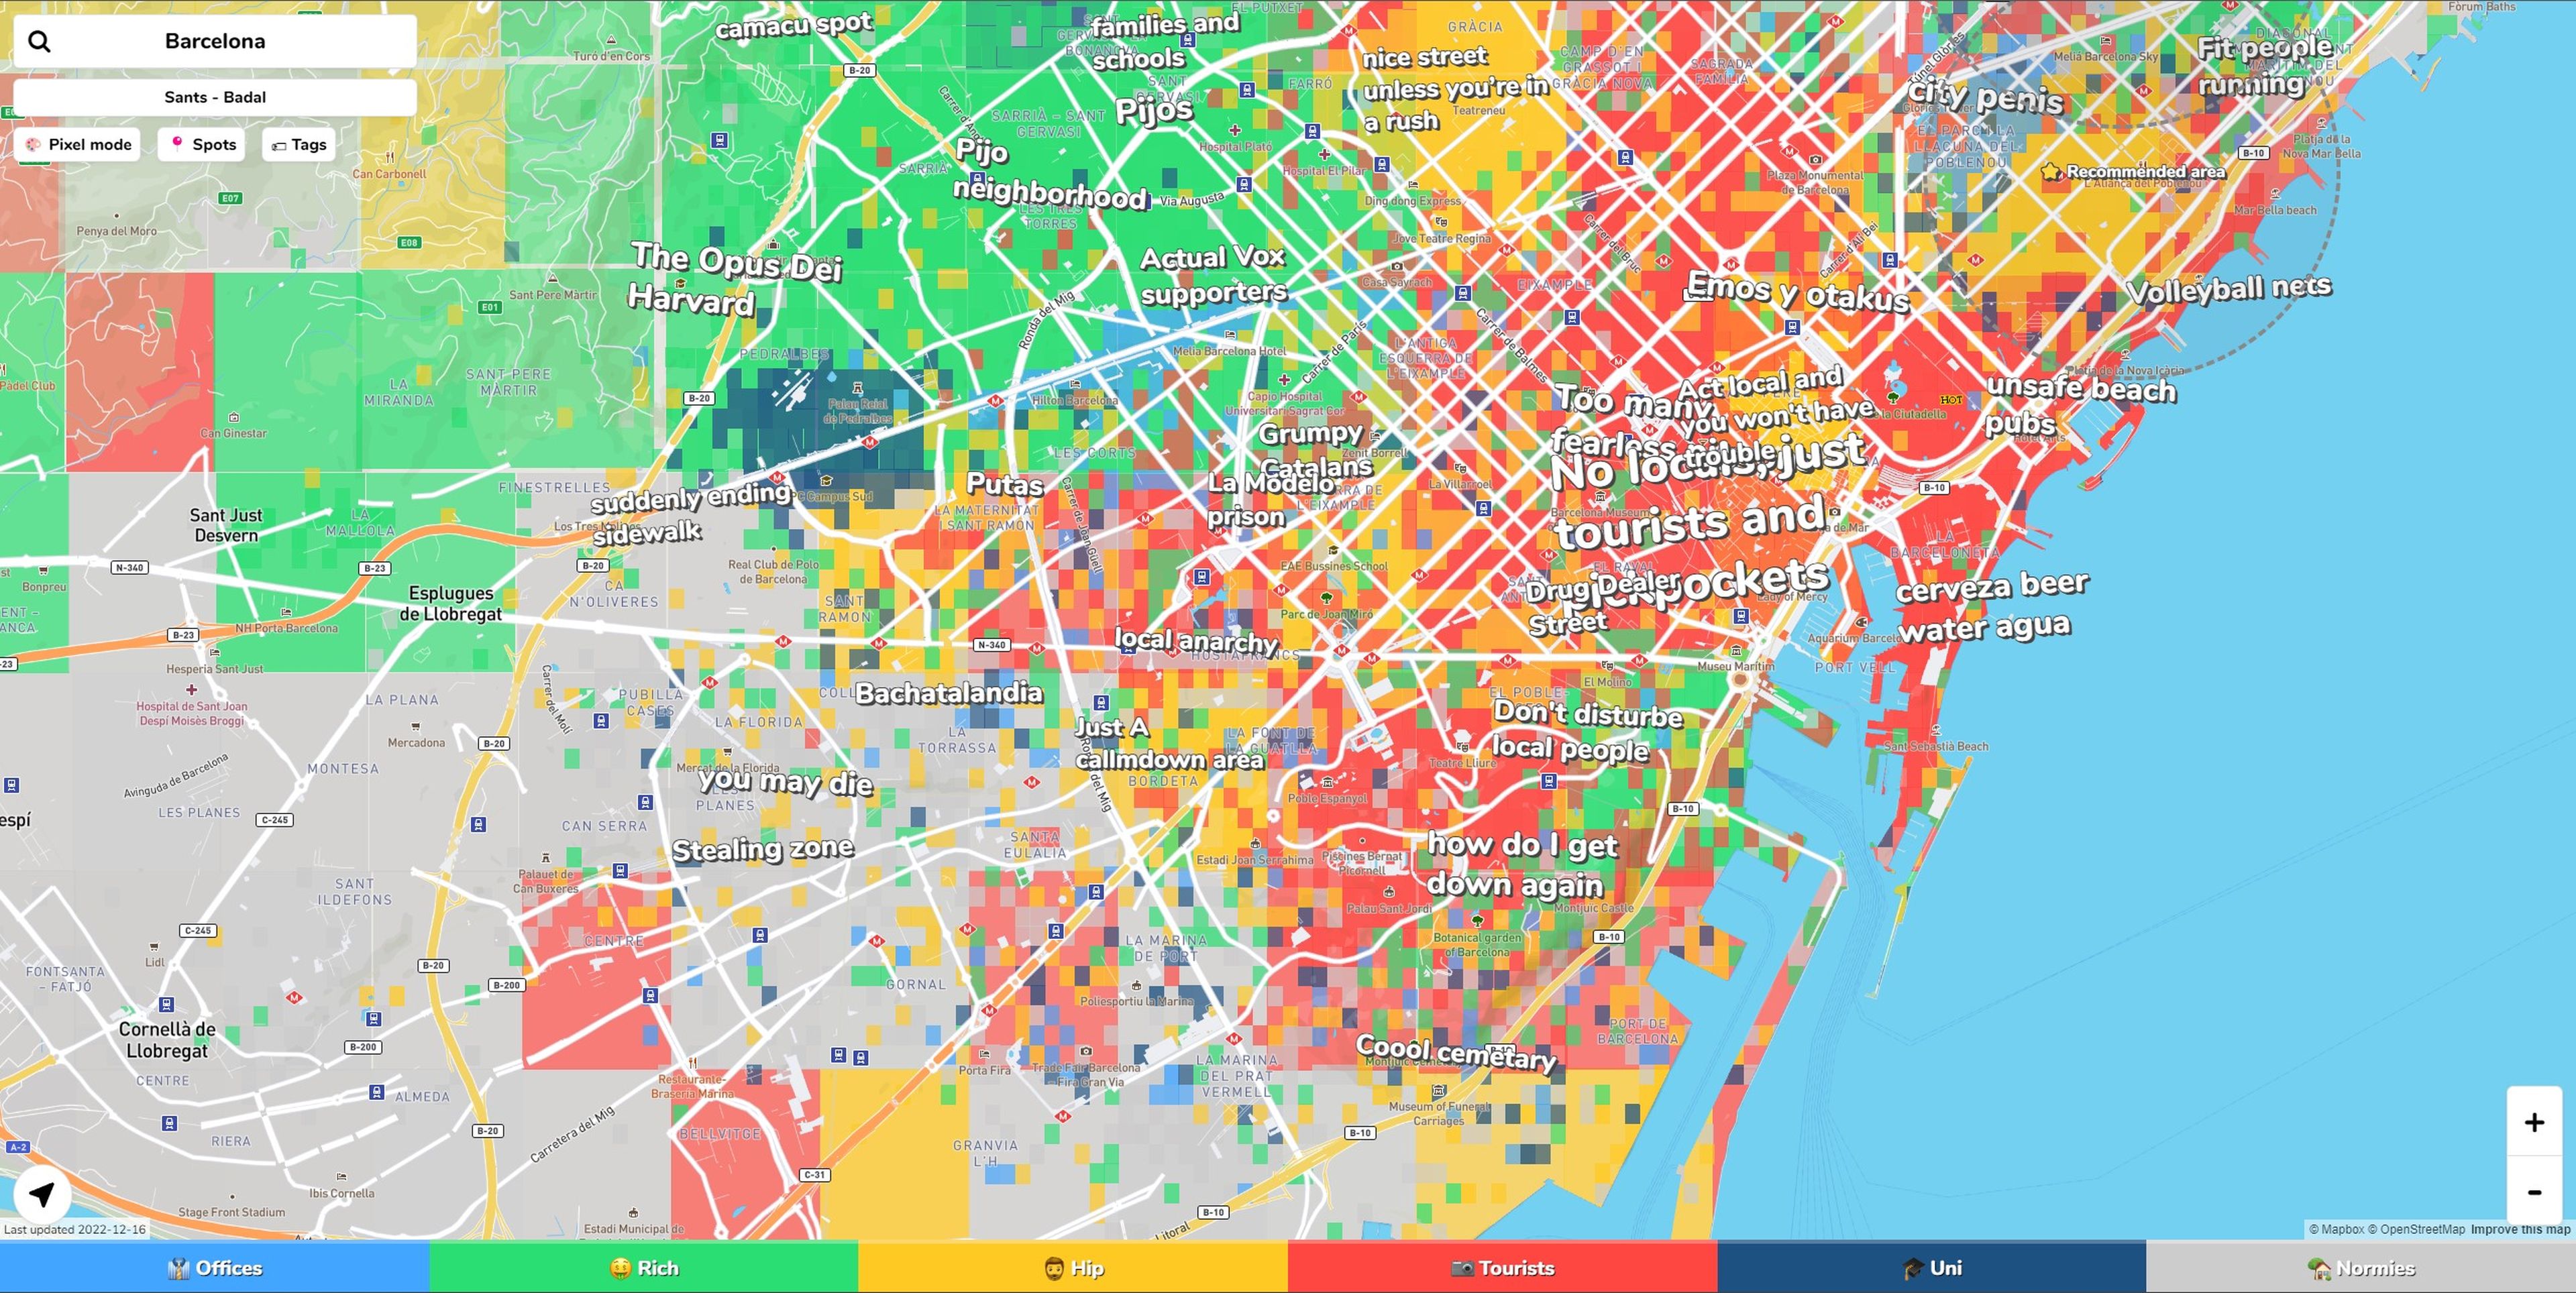 Descubre con este mapa las opiniones del barrio en el que vives